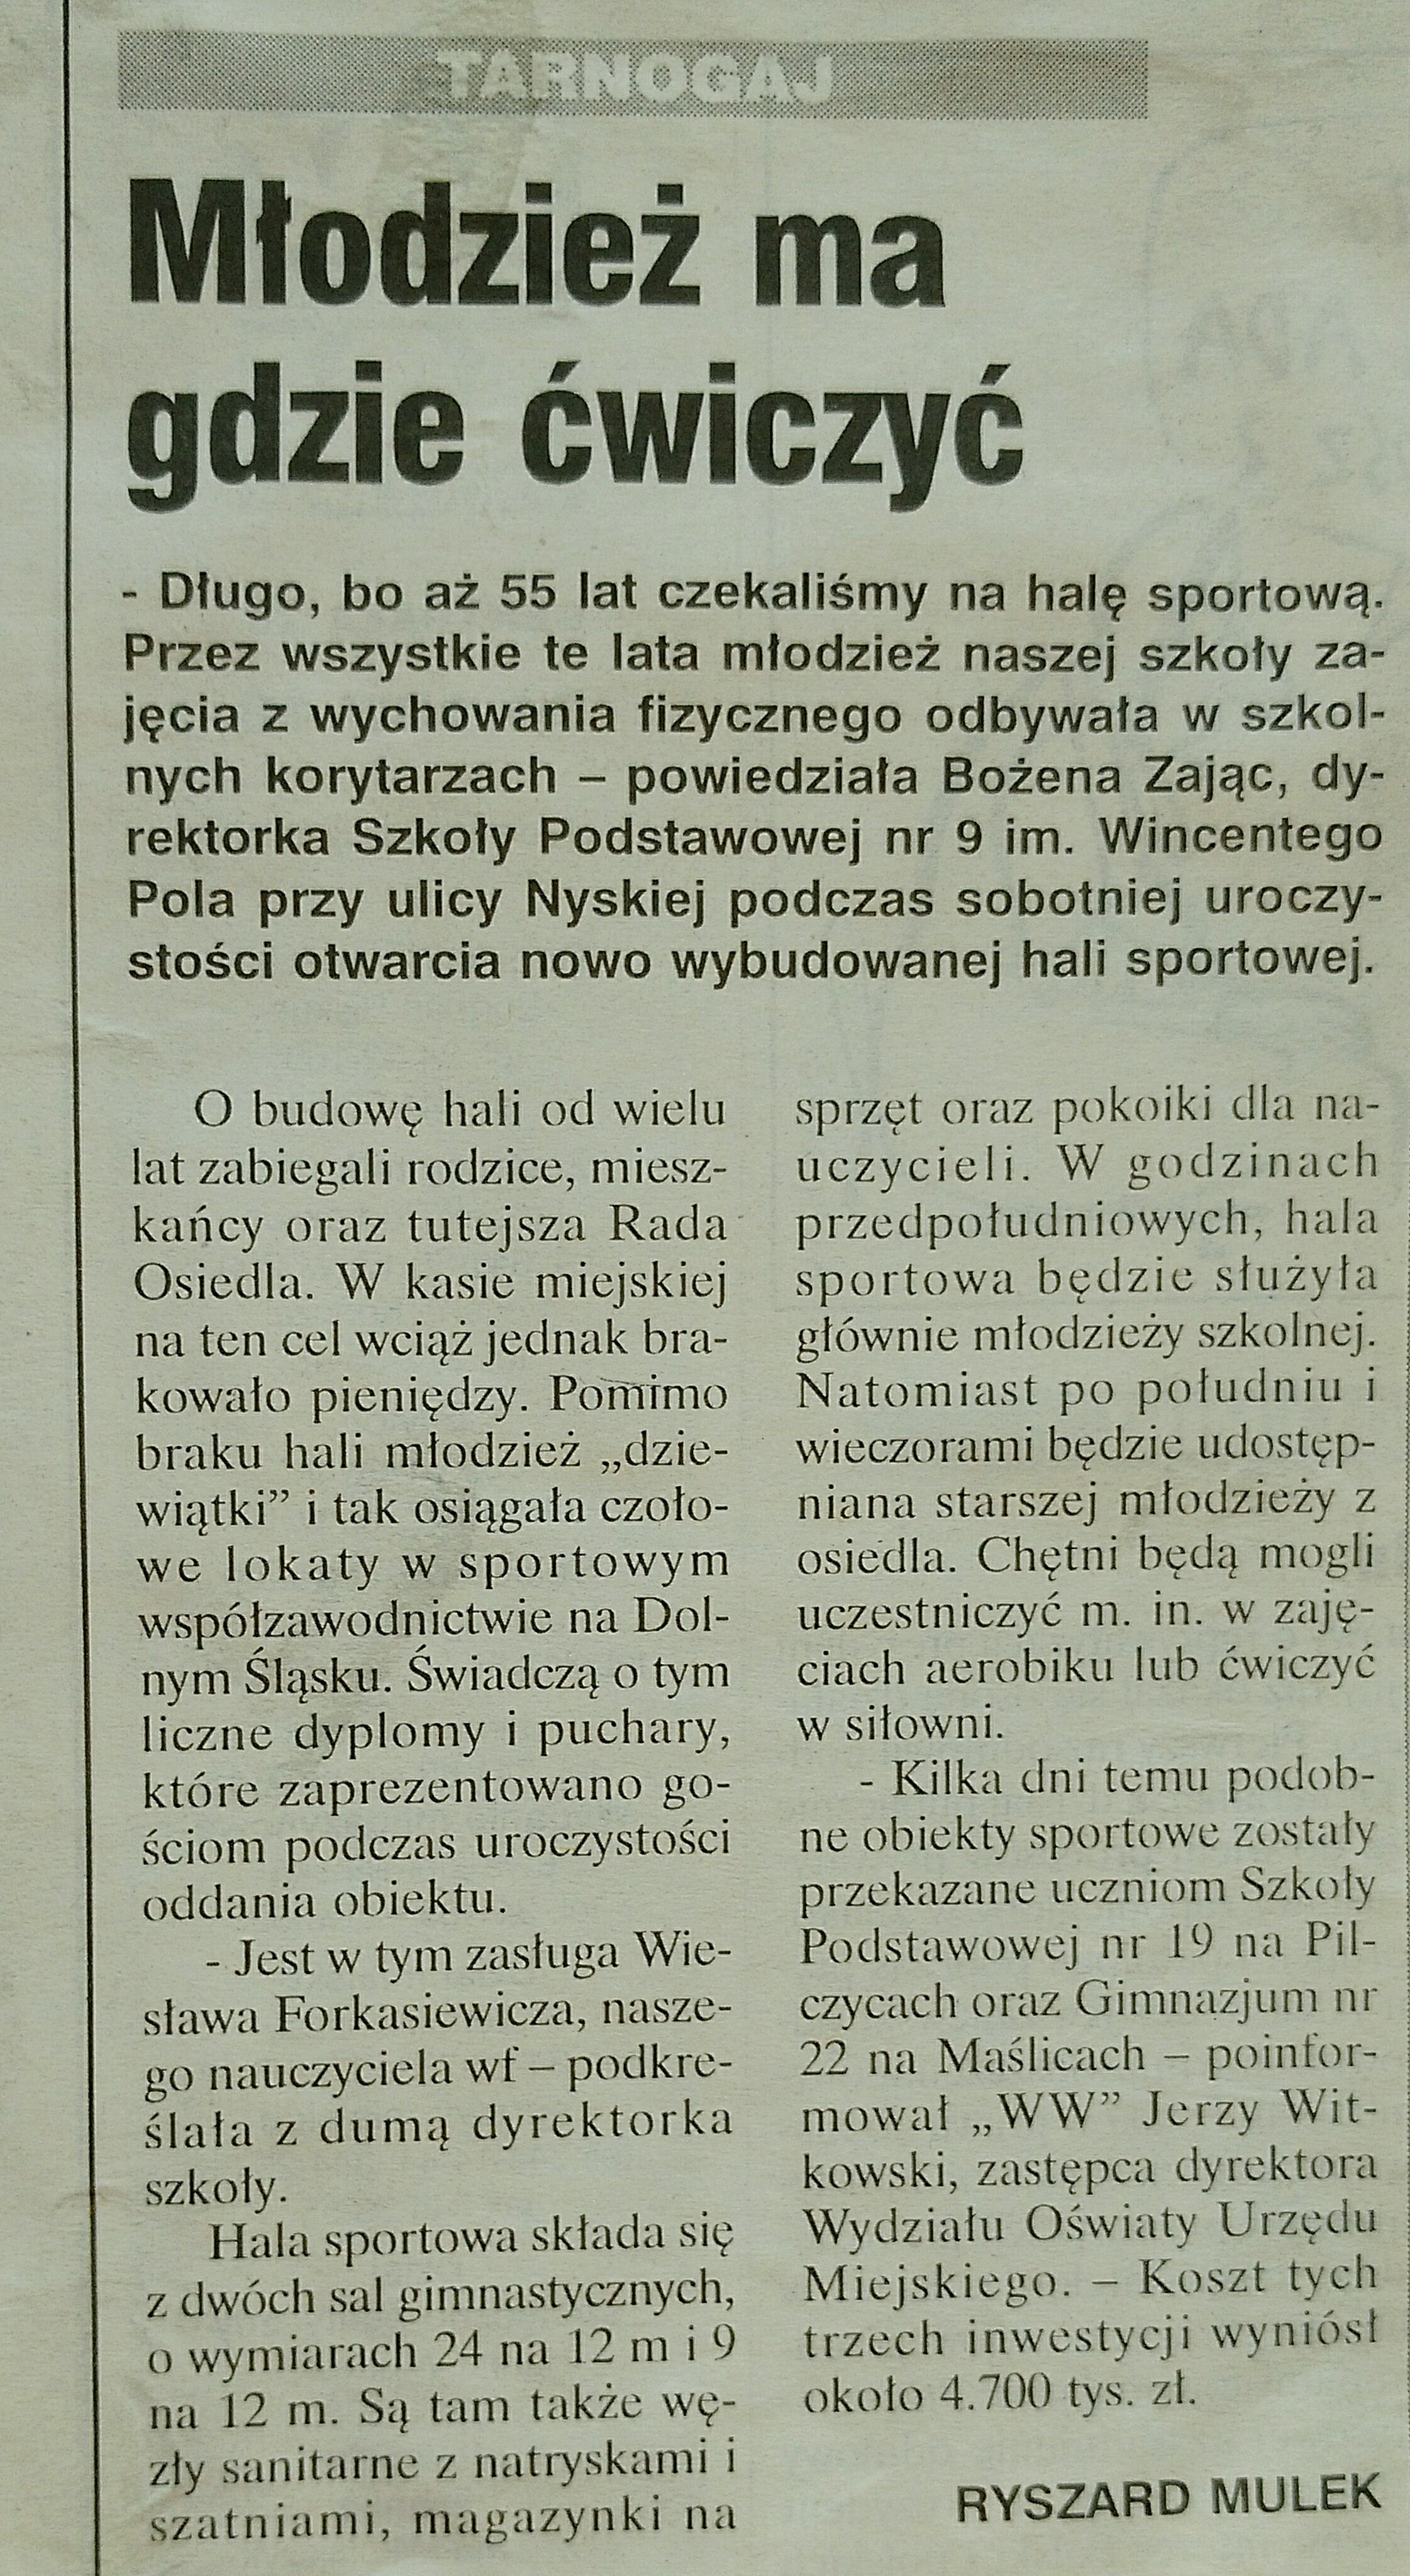 8 26 Marca 2001 Wieczór Wrocławski